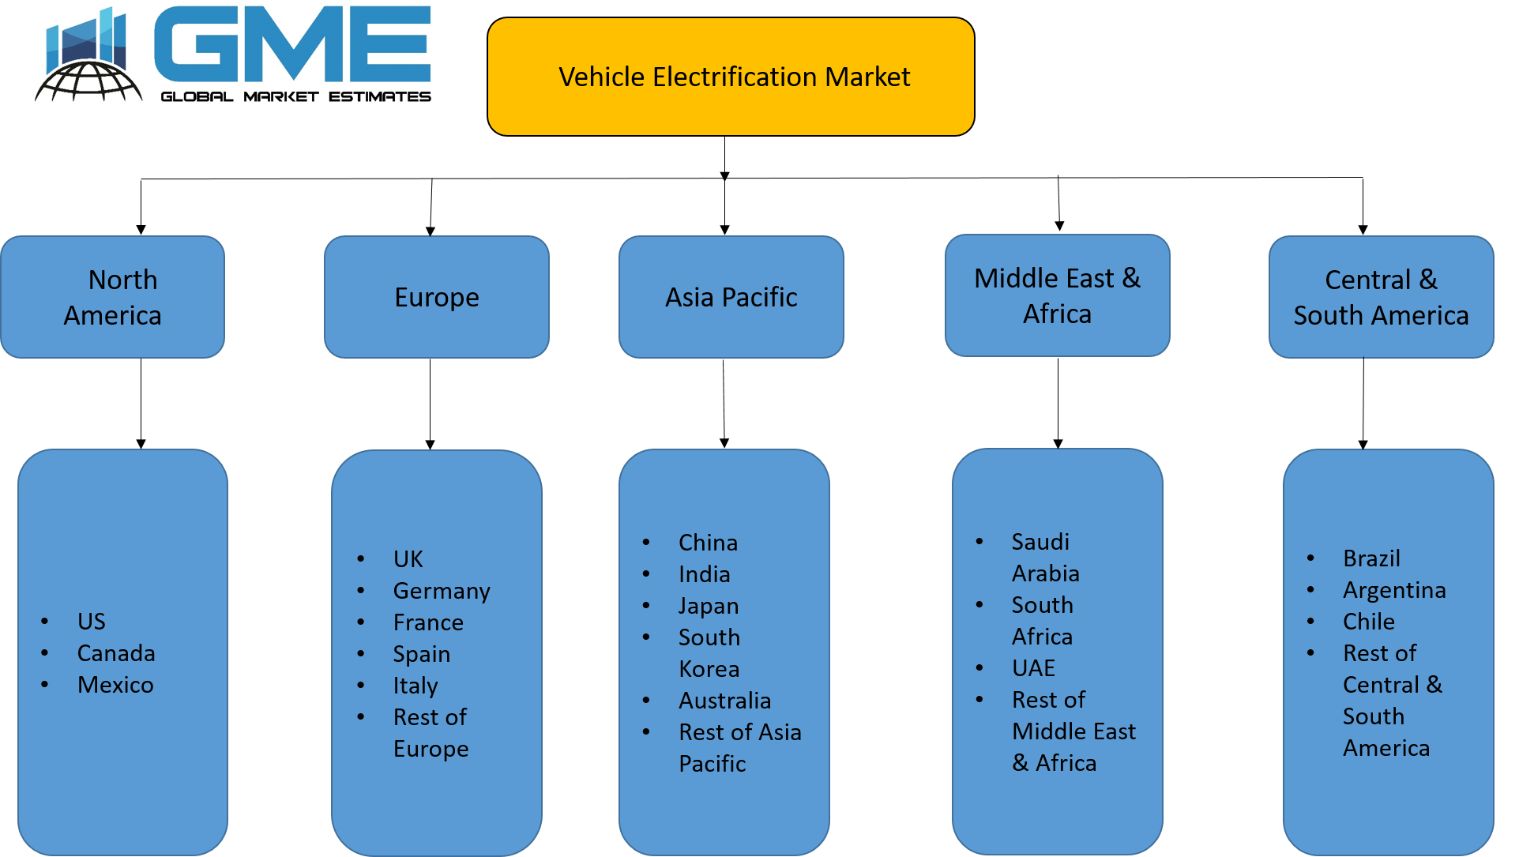 Vehicle Electrification Market - Regional Analysis